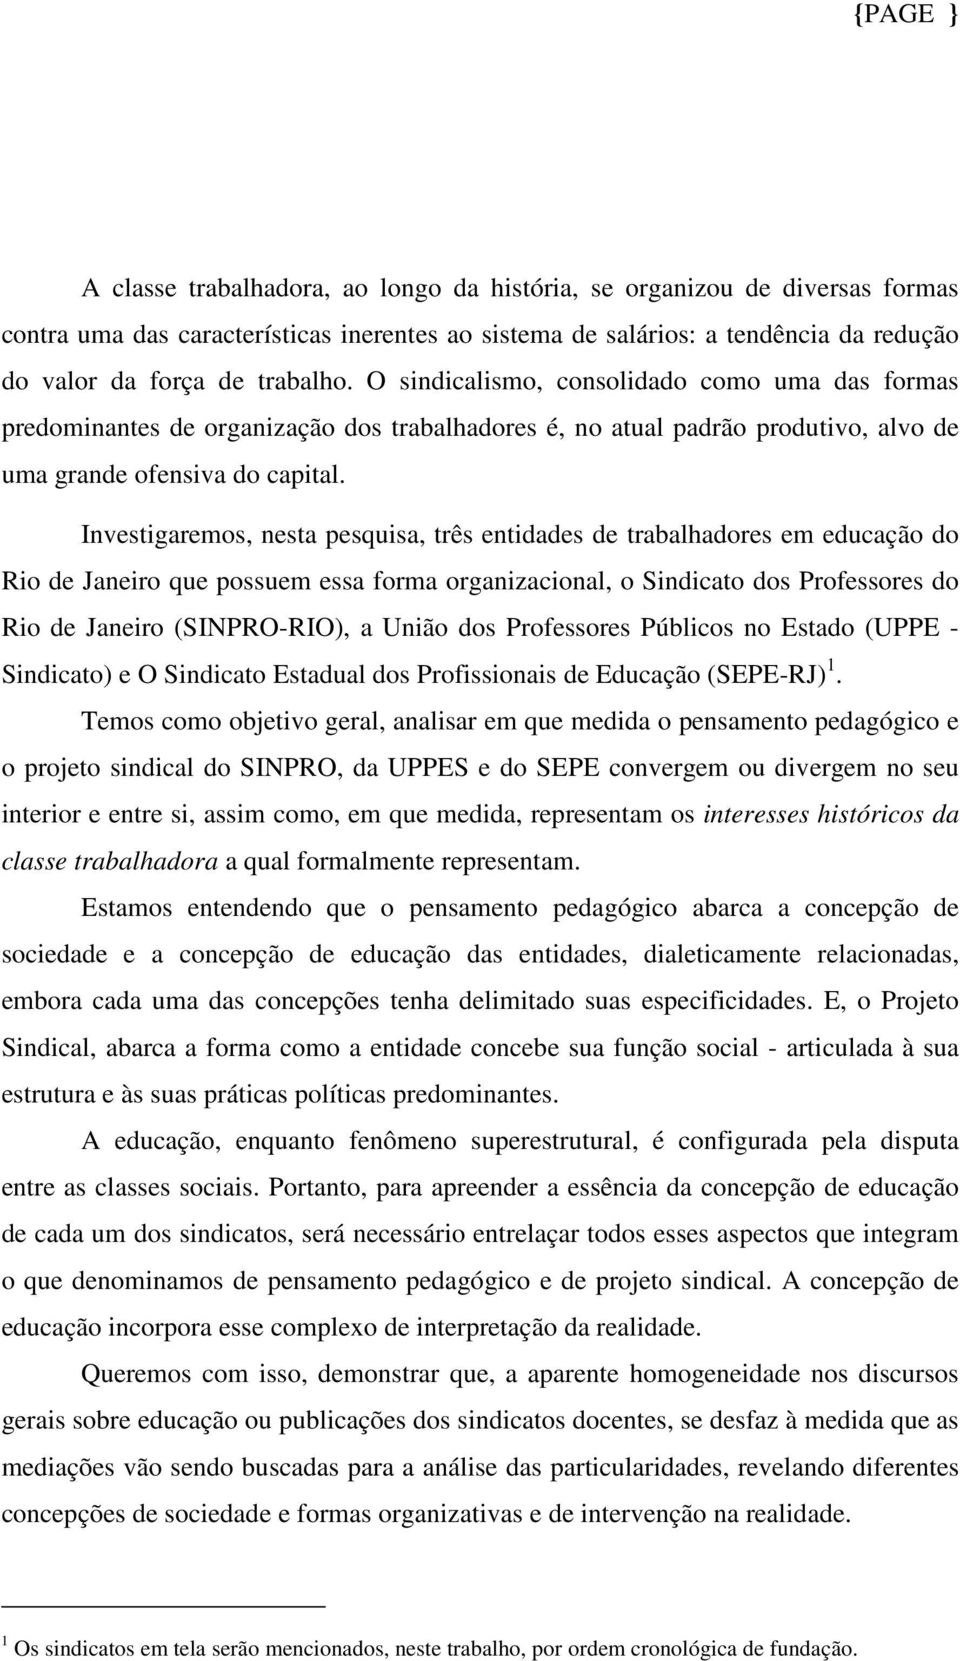 Investigaremos, nesta pesquisa, três entidades de trabalhadores em educação do Rio de Janeiro que possuem essa forma organizacional, o Sindicato dos Professores do Rio de Janeiro (SINPRO-RIO), a